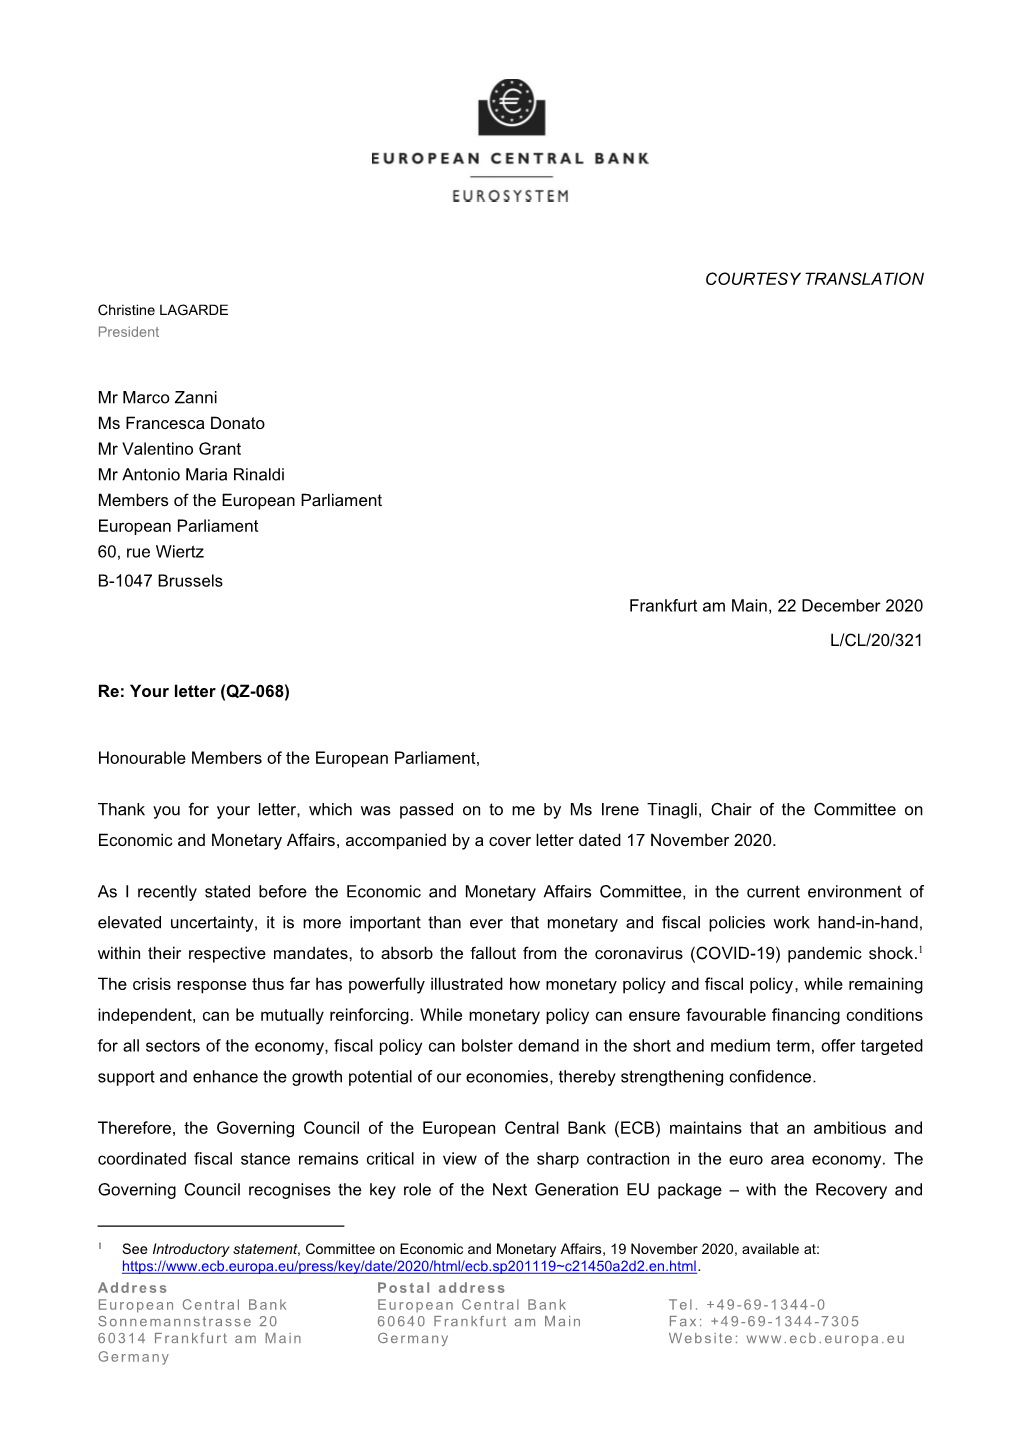 Letter from the ECB President to Mr Marco Zanni, Ms Francesca Donato, Mr Valentino Grant and Mr Antonio Maria Rinaldi, Meps, On